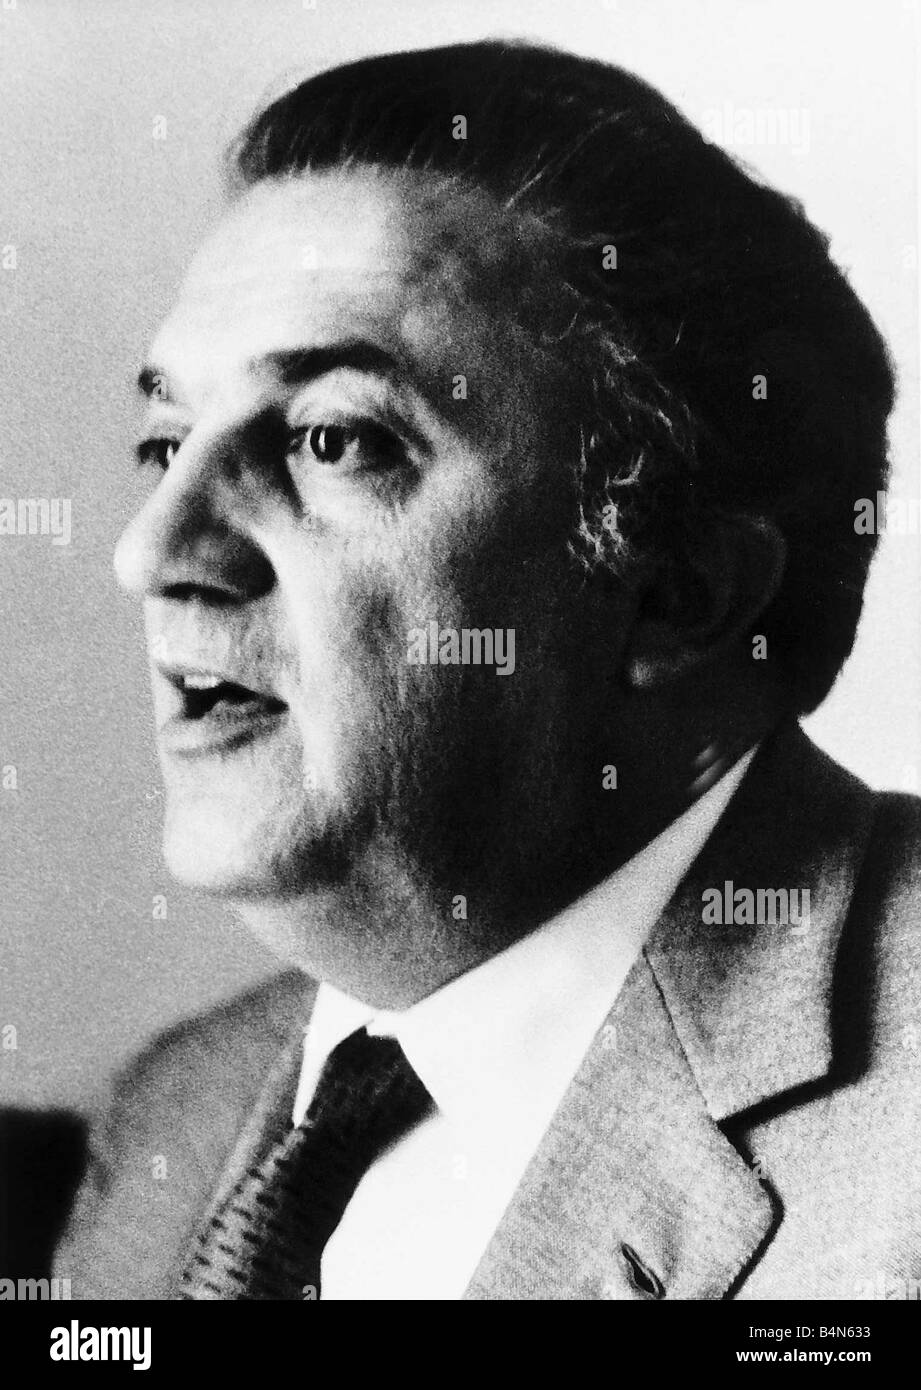 Frederico Fellini, director de cine italiano 1969 Foto de stock